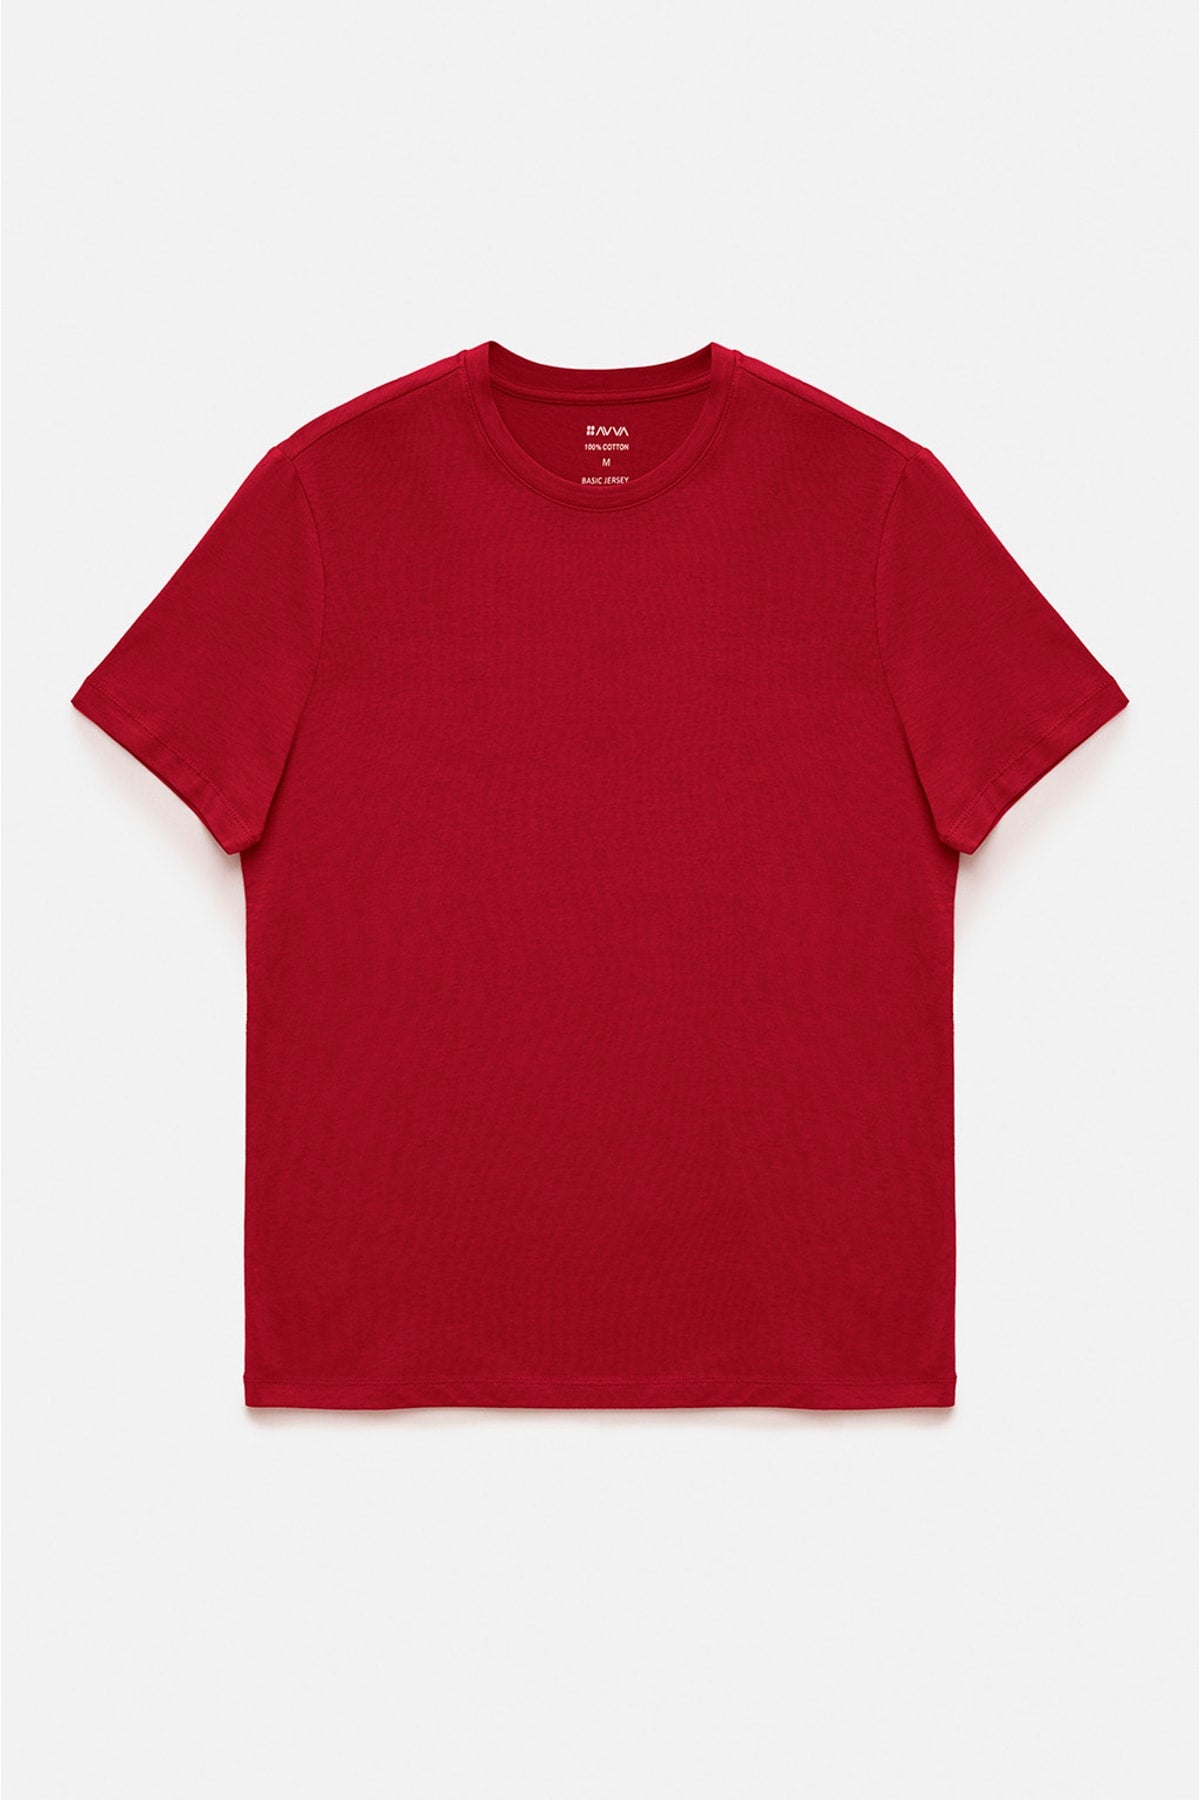 Men's Navy Bordo 2 Piece Cycling Collar 100 %Cotton Basic T-Shirt E001012